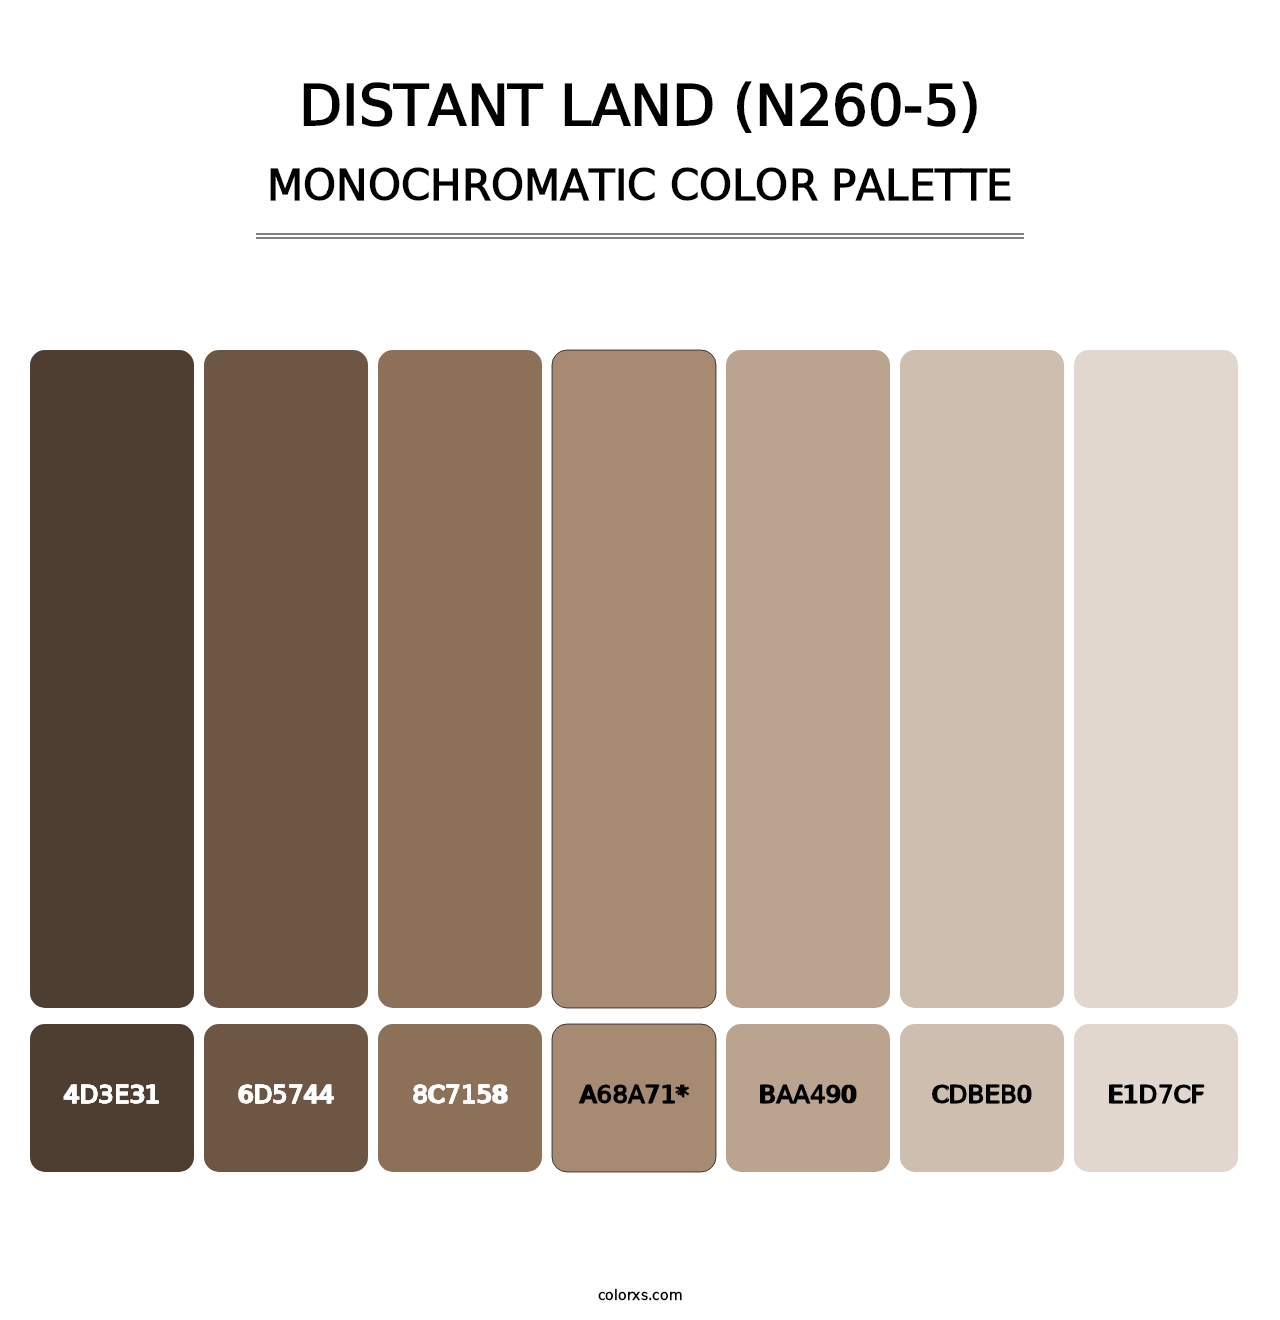 Distant Land (N260-5) - Monochromatic Color Palette